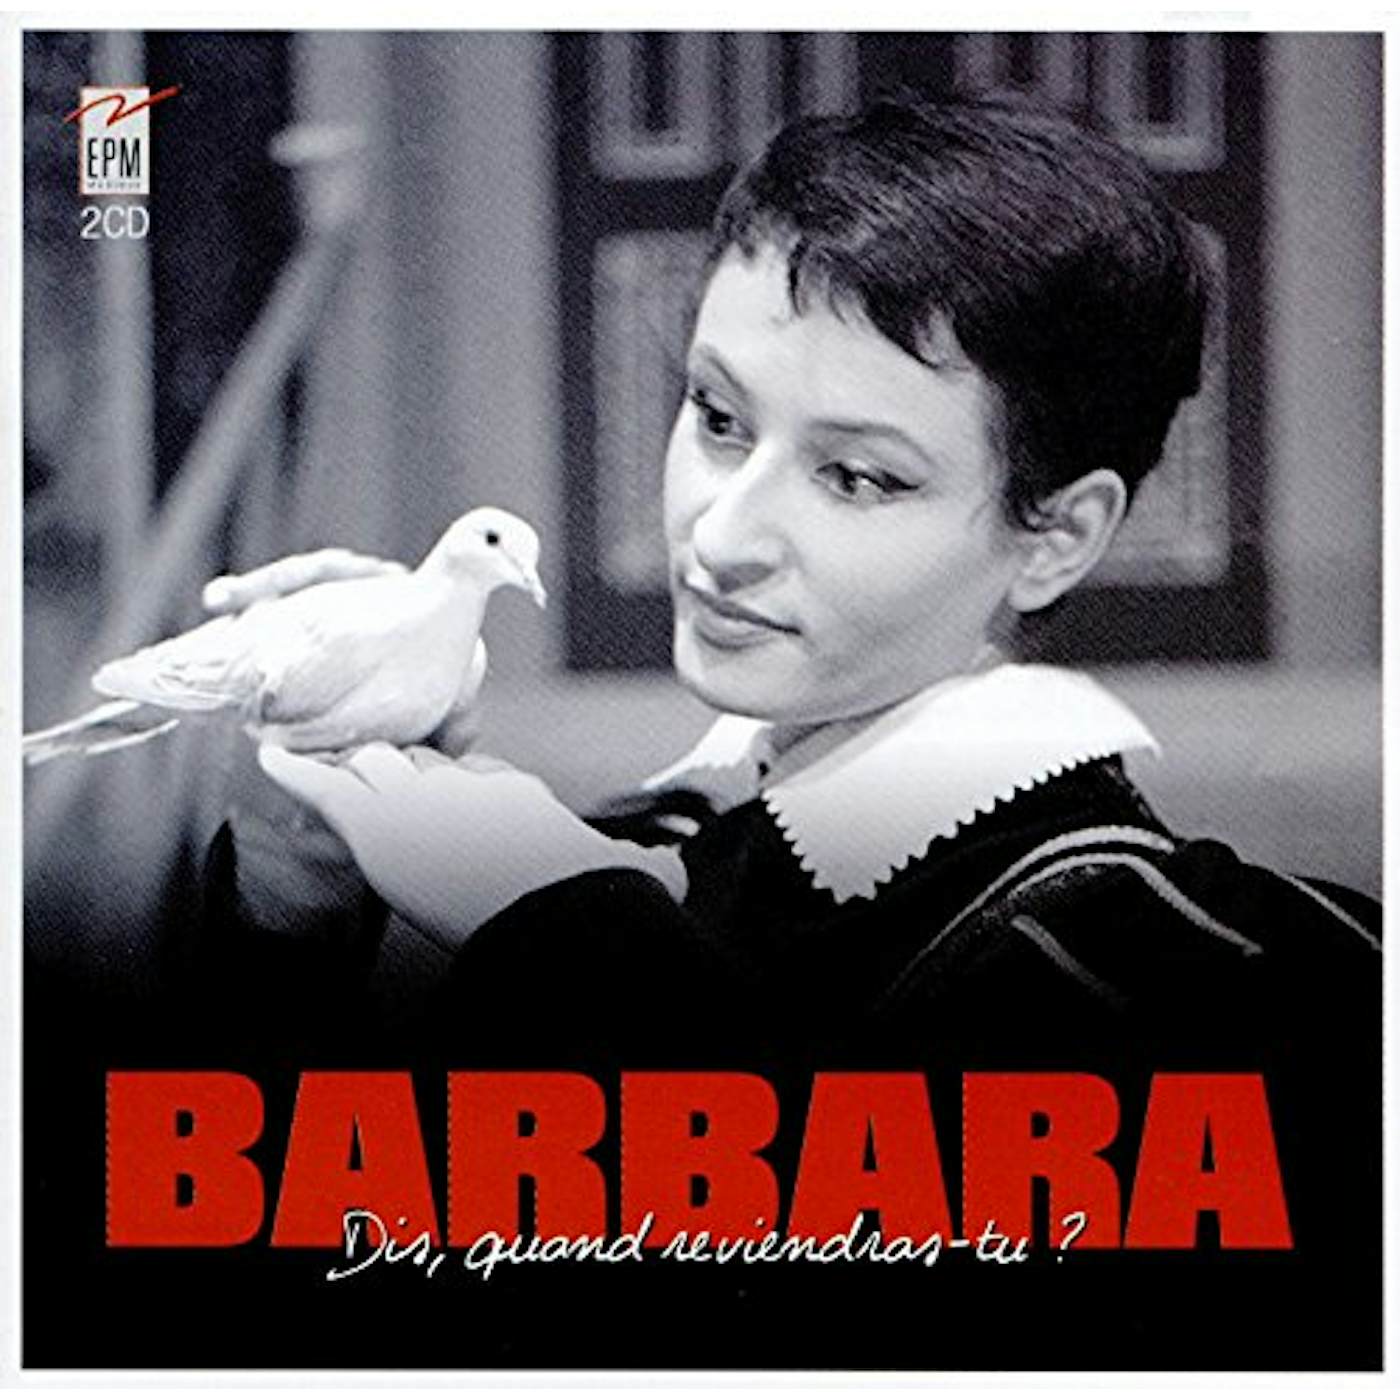 Barbara DIS QUAND REVIENDRAS-TU? CD